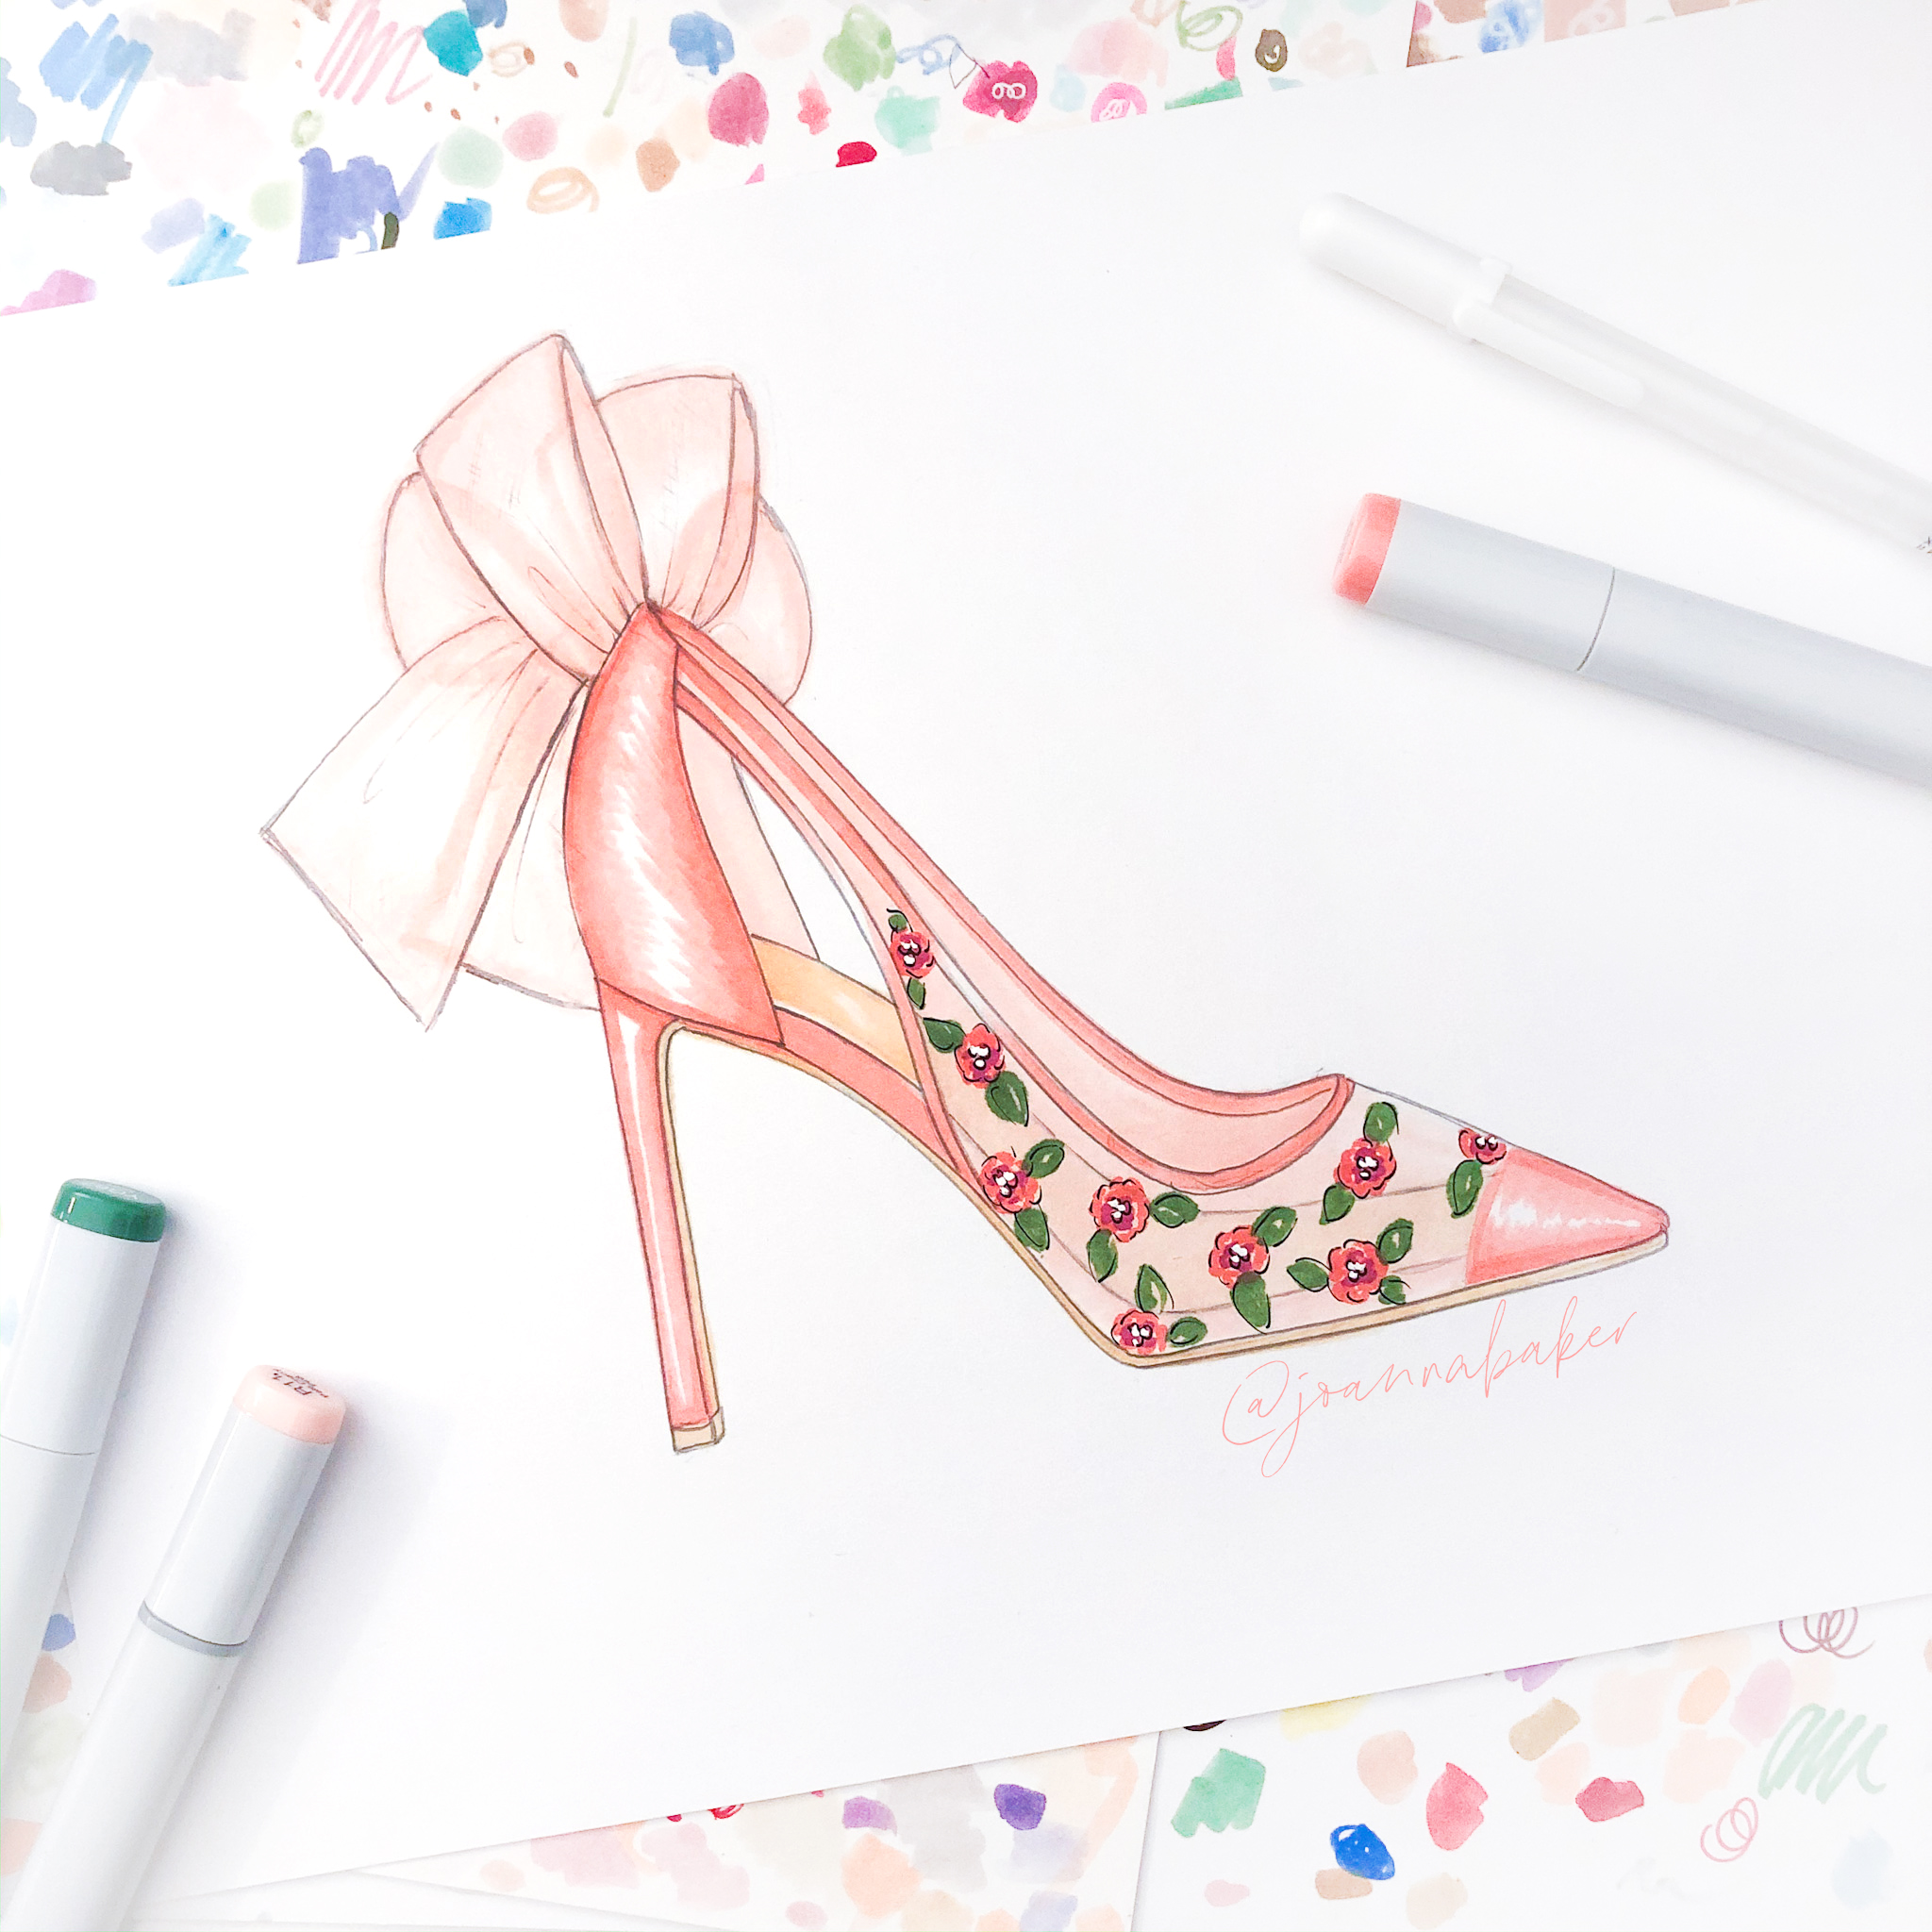 Floral Shoe Illustration by Joanna Baker